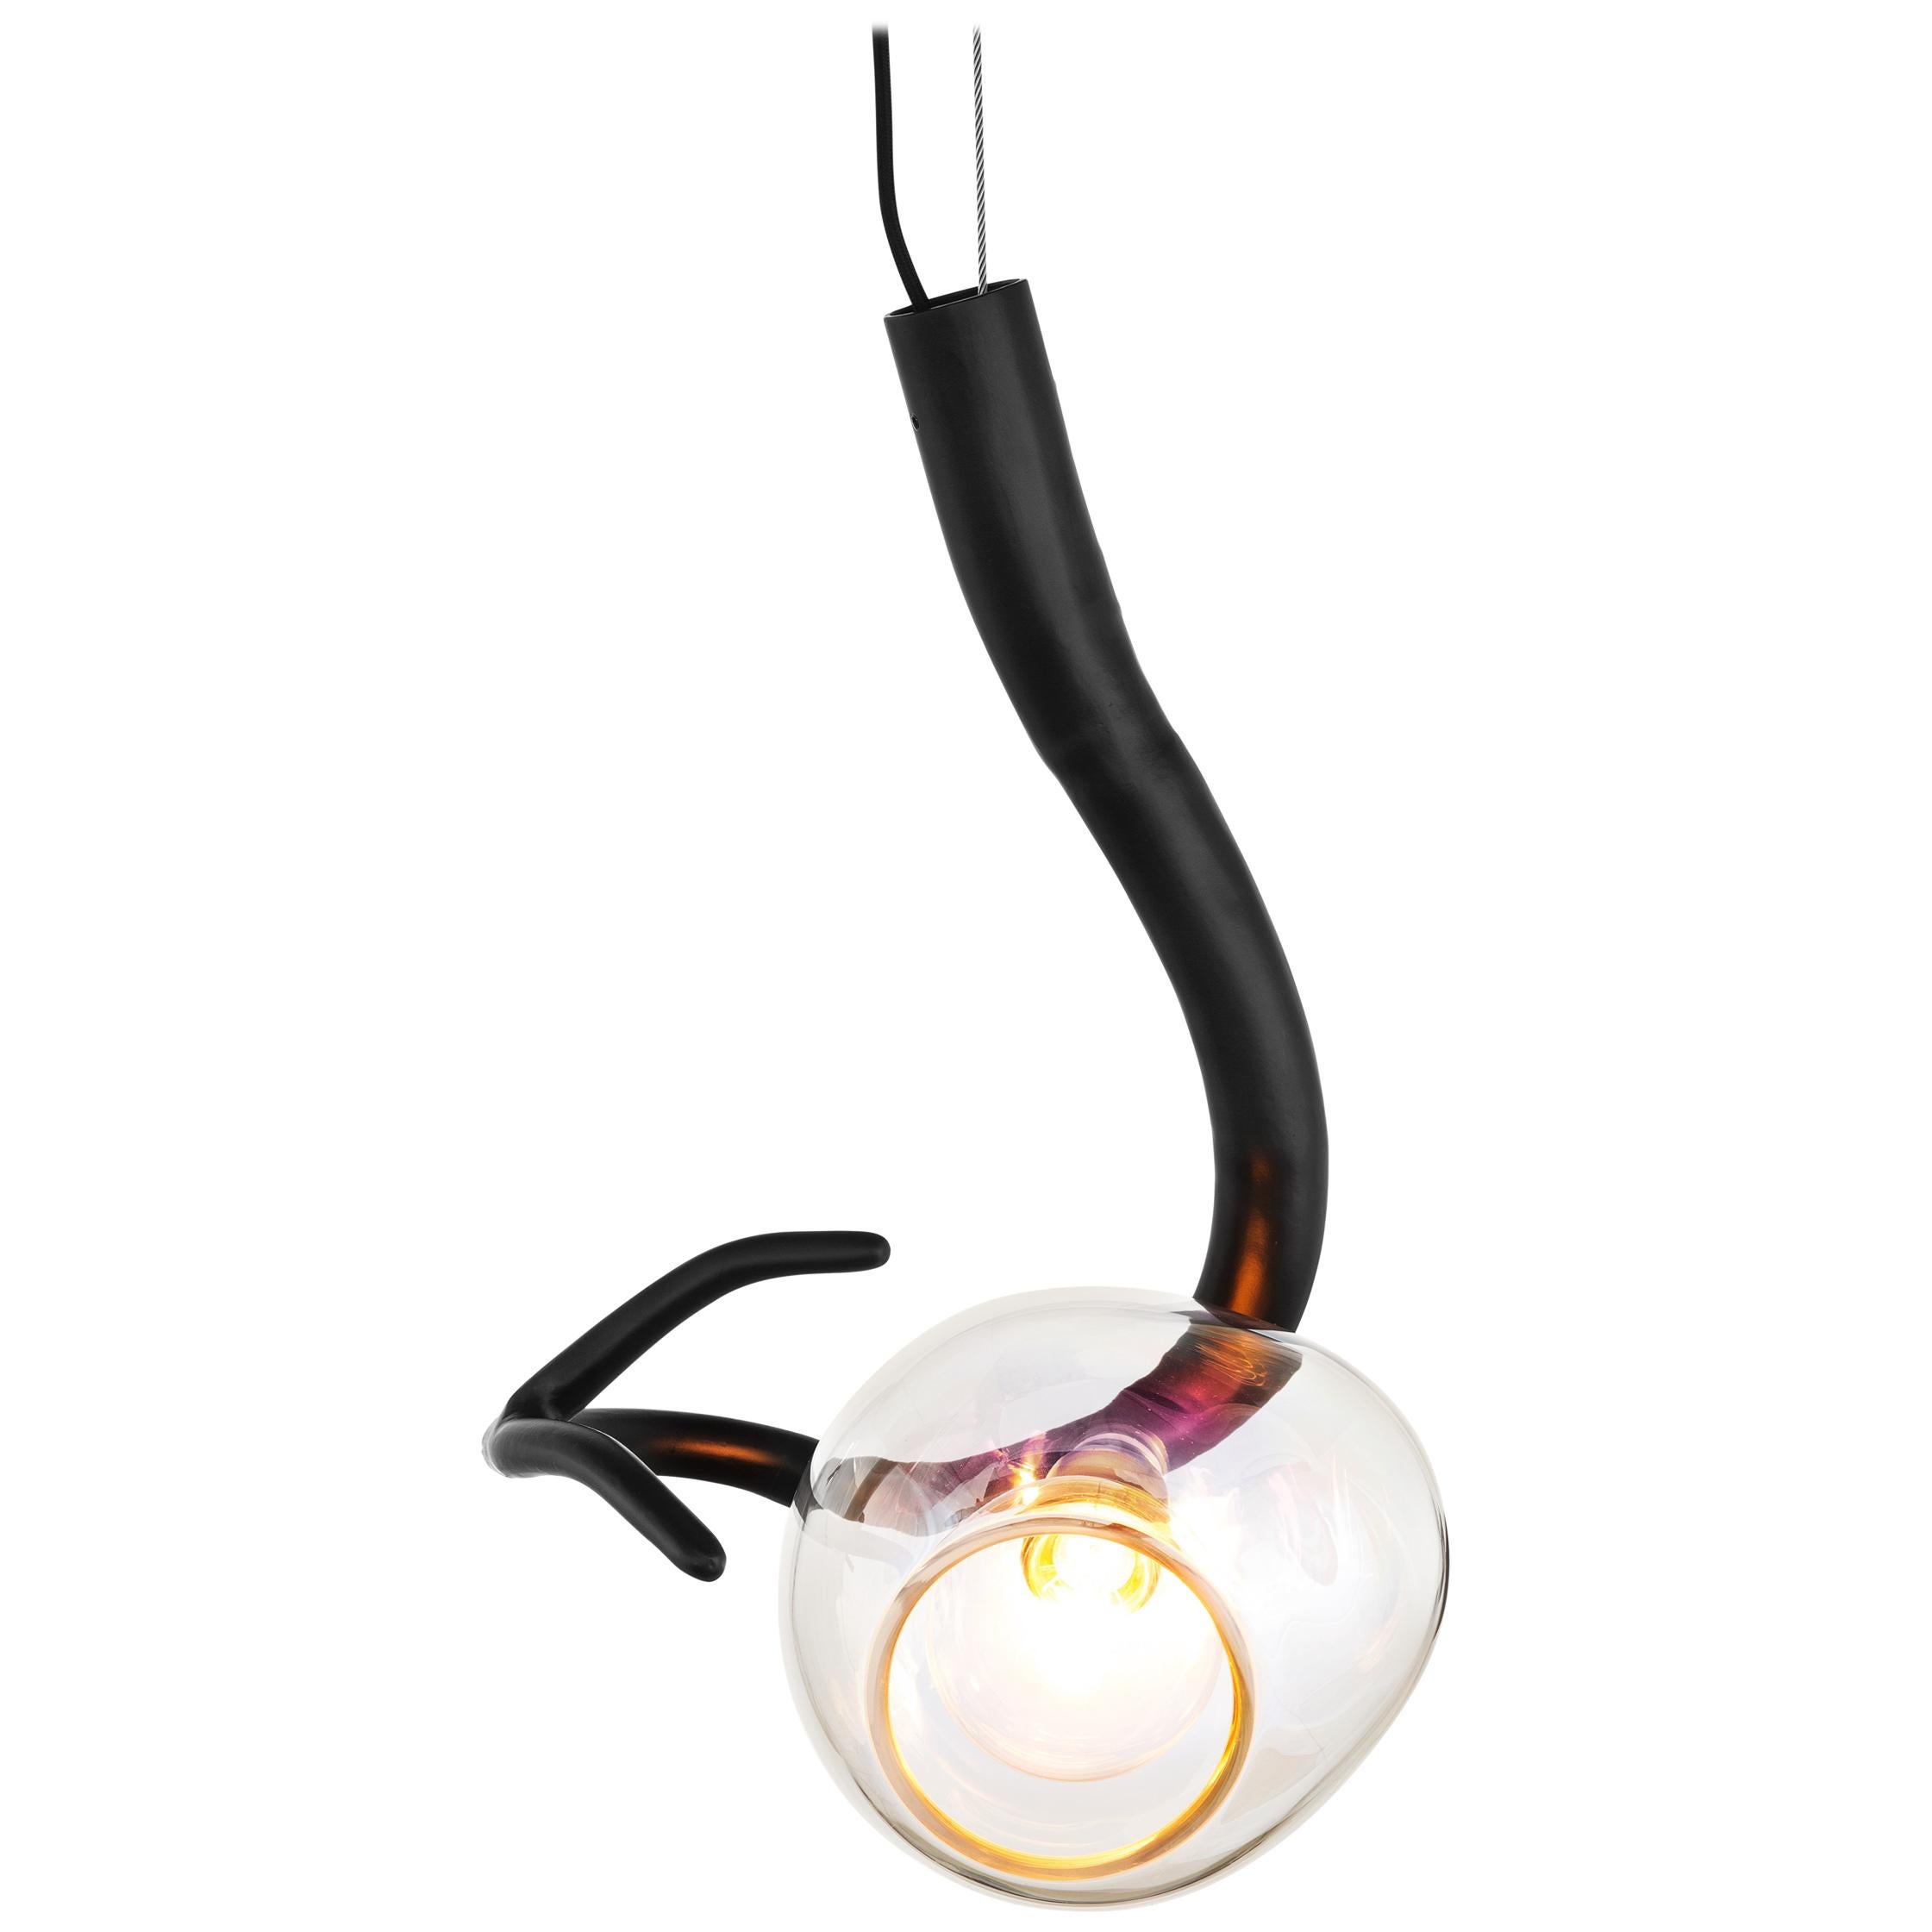 Lampe à suspension moderne avec verre coloré en finition noire mate - Collection Ersa